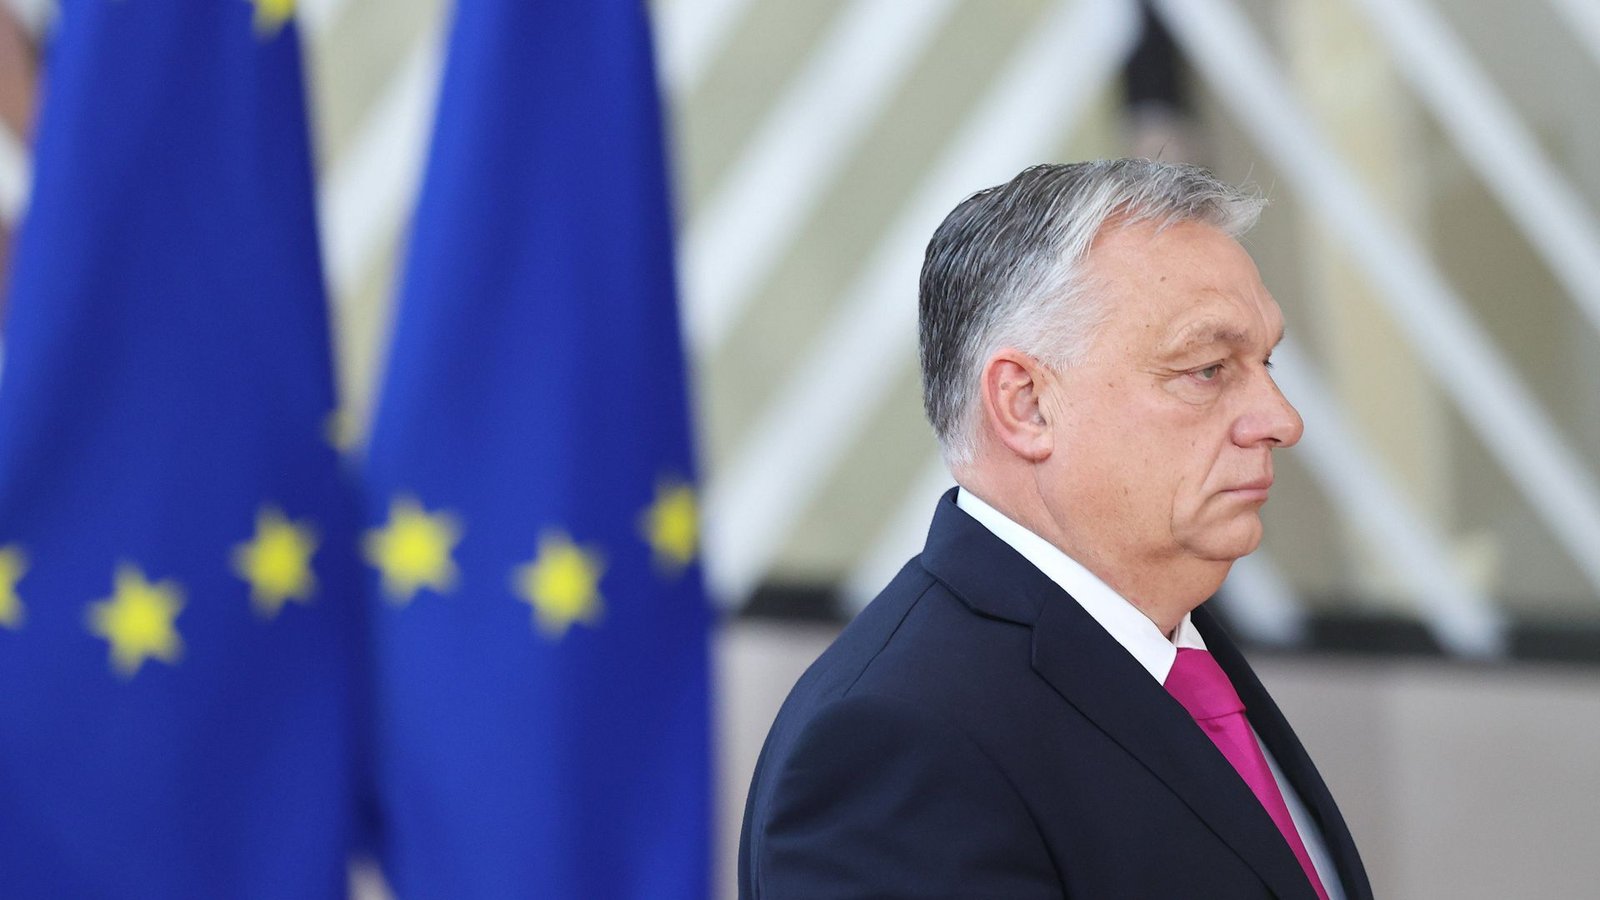 Ungarns Ministerpräsident Viktor Orbán fällt in der EU  eher durch Blockaden und Konfrontation auf, nicht als Vermittler.Foto: Imago/Xinhua/Zhao Dingzhe